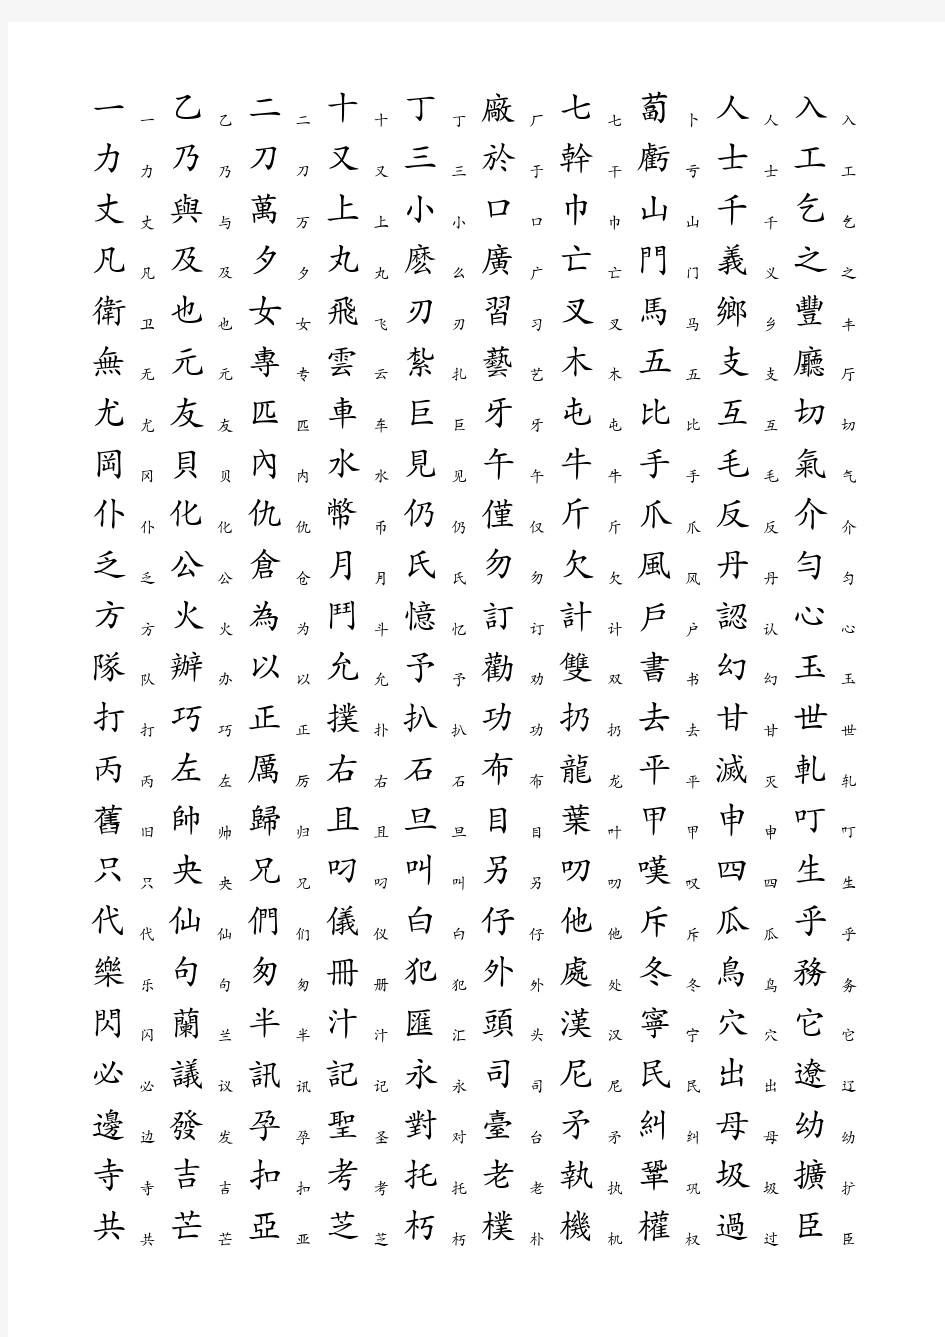 5000个常用汉字简繁对照表